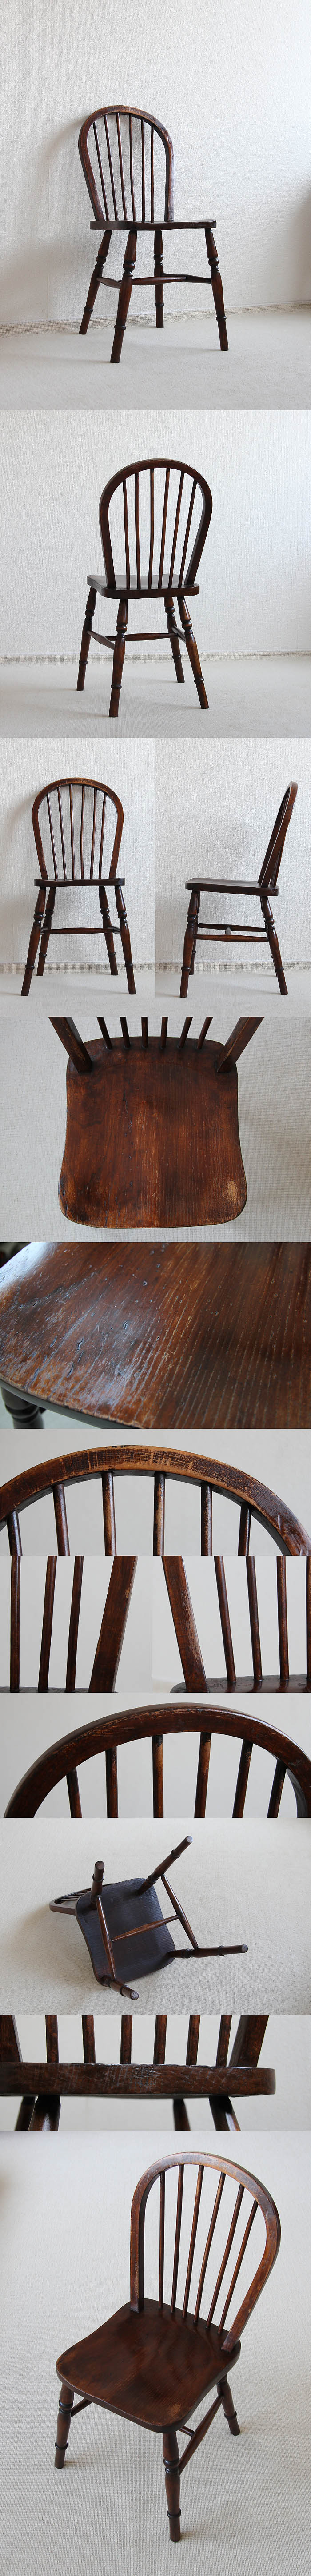 イギリス アンティーク フープバックチェア 木製椅子 家具 インテリア「一枚板座面」P-056